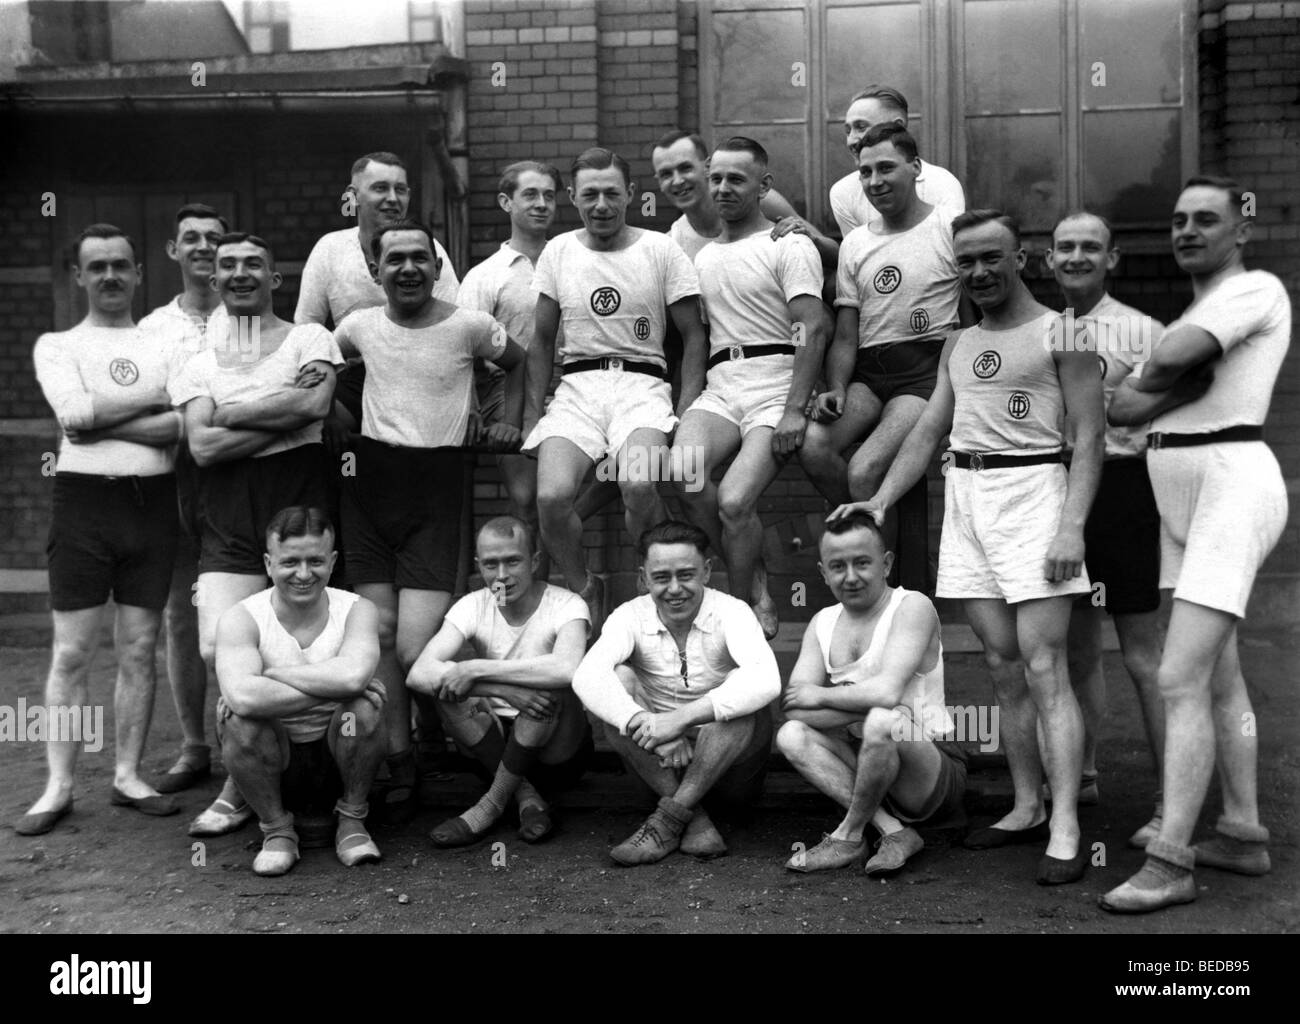 Un groupe d'athlètes, de photographie historique, autour de 1934 Banque D'Images